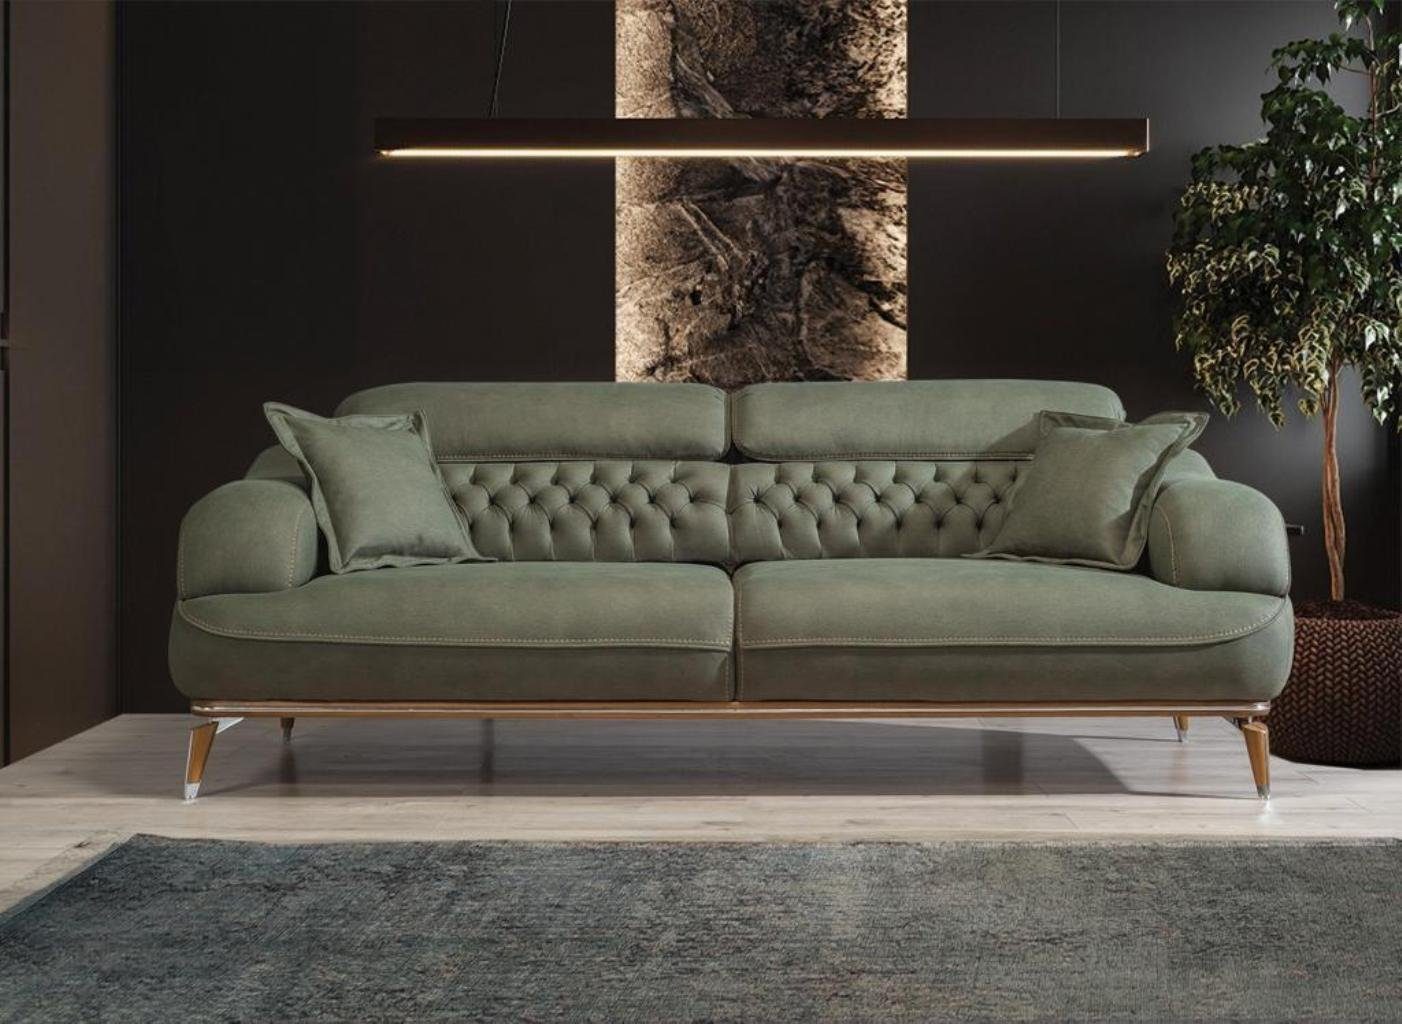 Dreisitzer Modern Sofa Made Dreisitzer Europa Luxus Teile, Möbel, Einrichtung in Wohnzimmer JVmoebel 1 Sofa